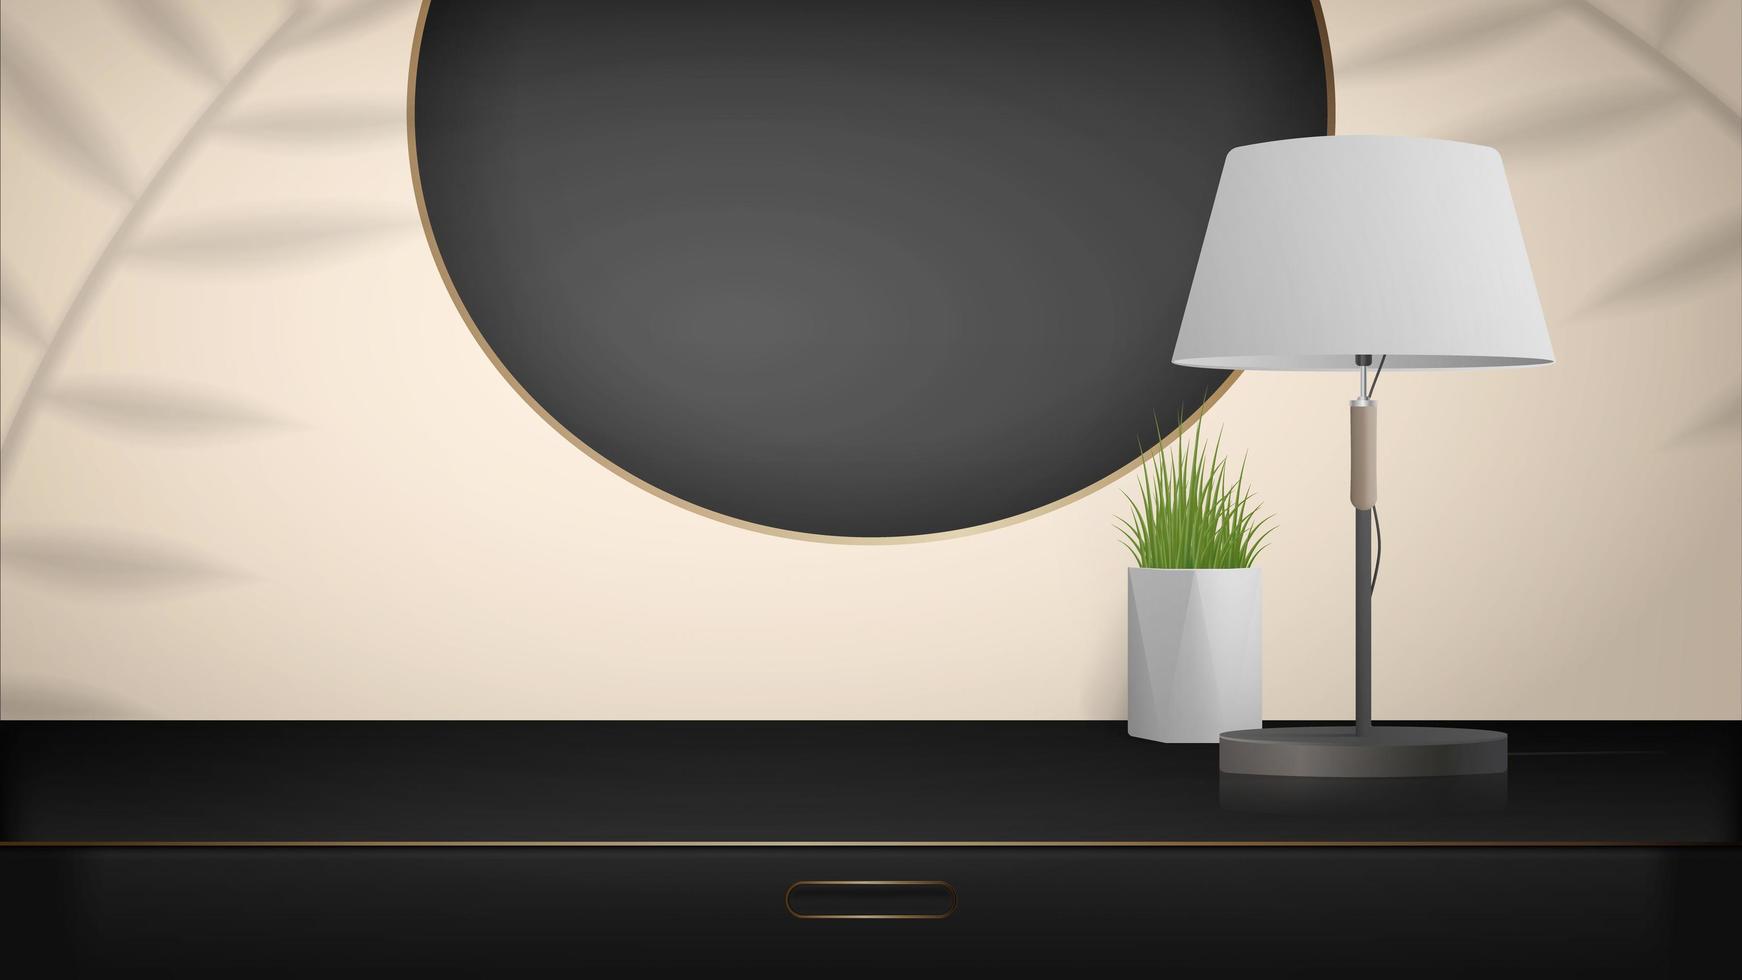 minimal scen för produktpresentation. svart garderob med guldaccenter, en bordslampa och en krukväxt. mockup för att visa upp en kosmetisk produkt, podium, sockel eller plattform. vektor